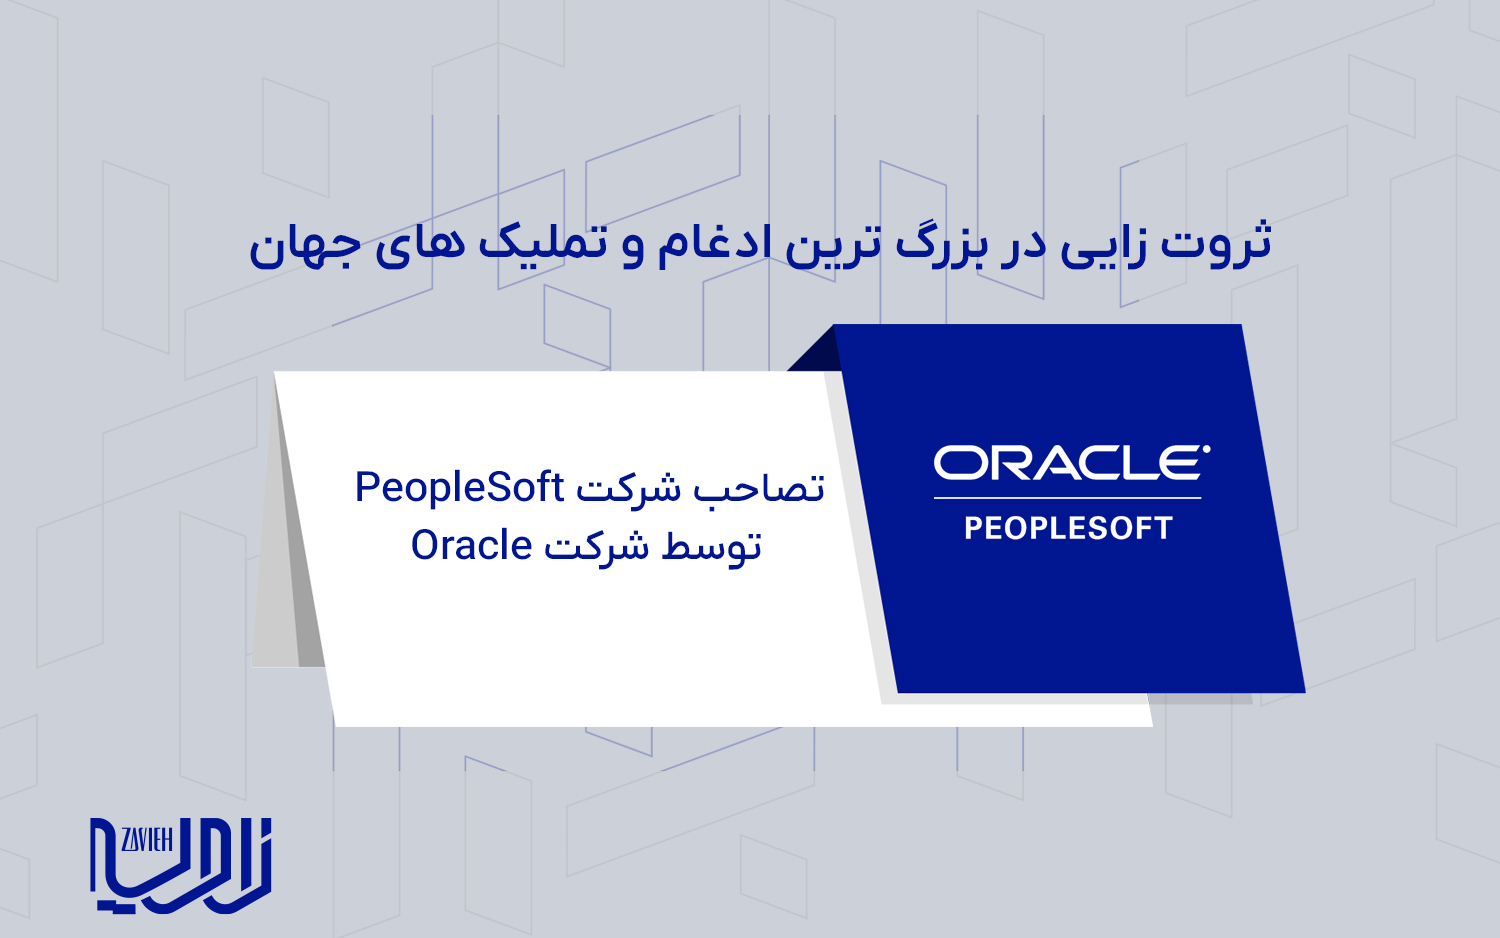 تصاحب شرکت PeopleSoft توسط شرکت Oracle